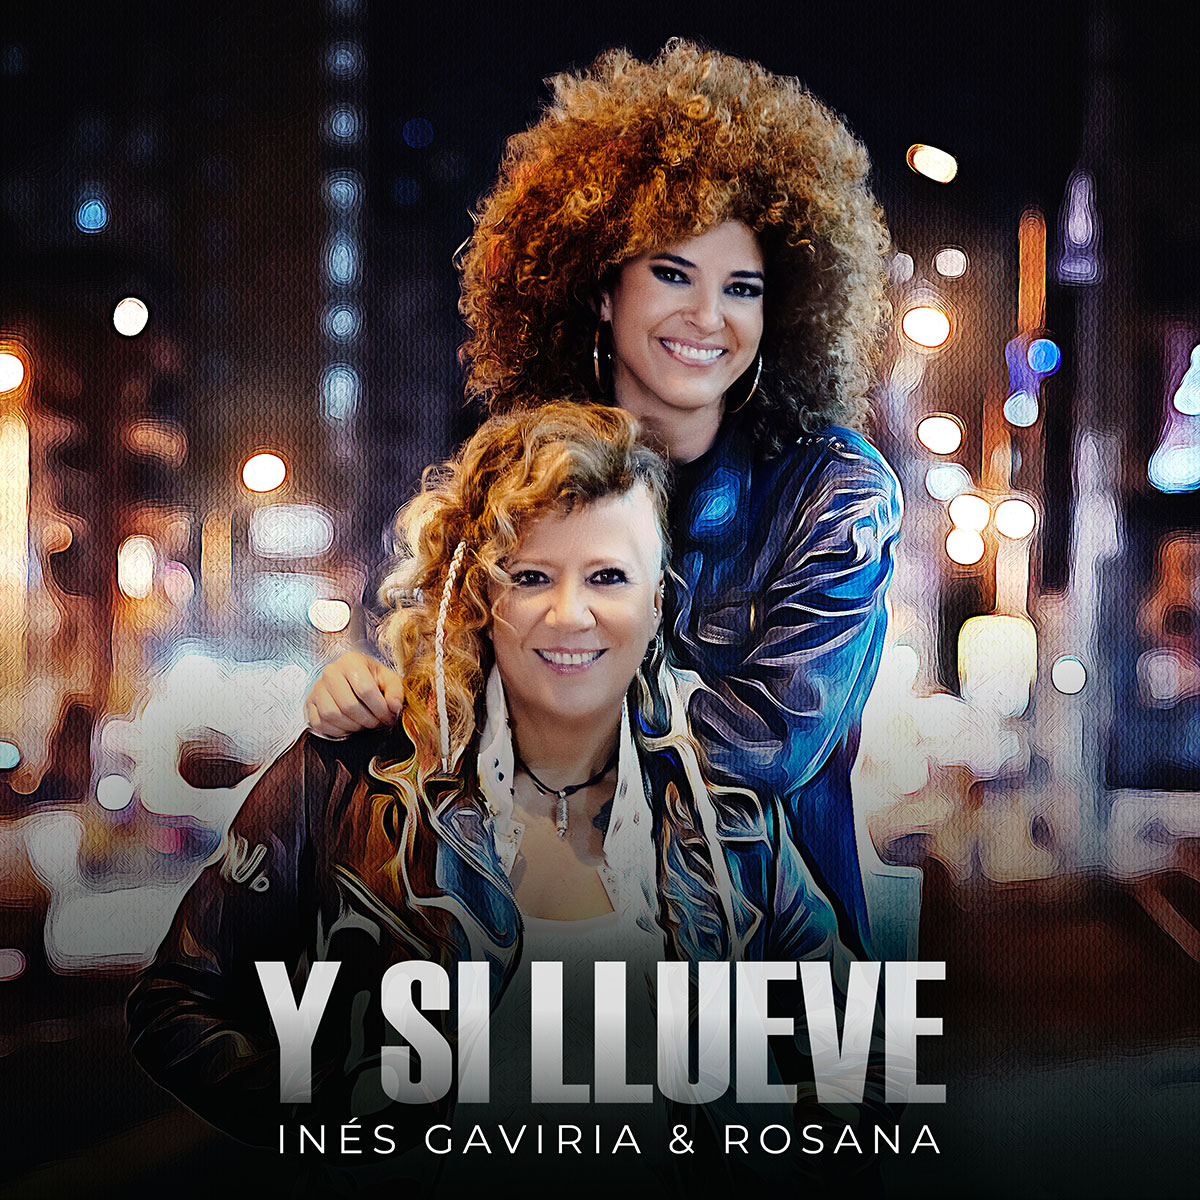 “Y si llueve”: nuevo sencillo de la cantautora colombiana Inés Gaviria